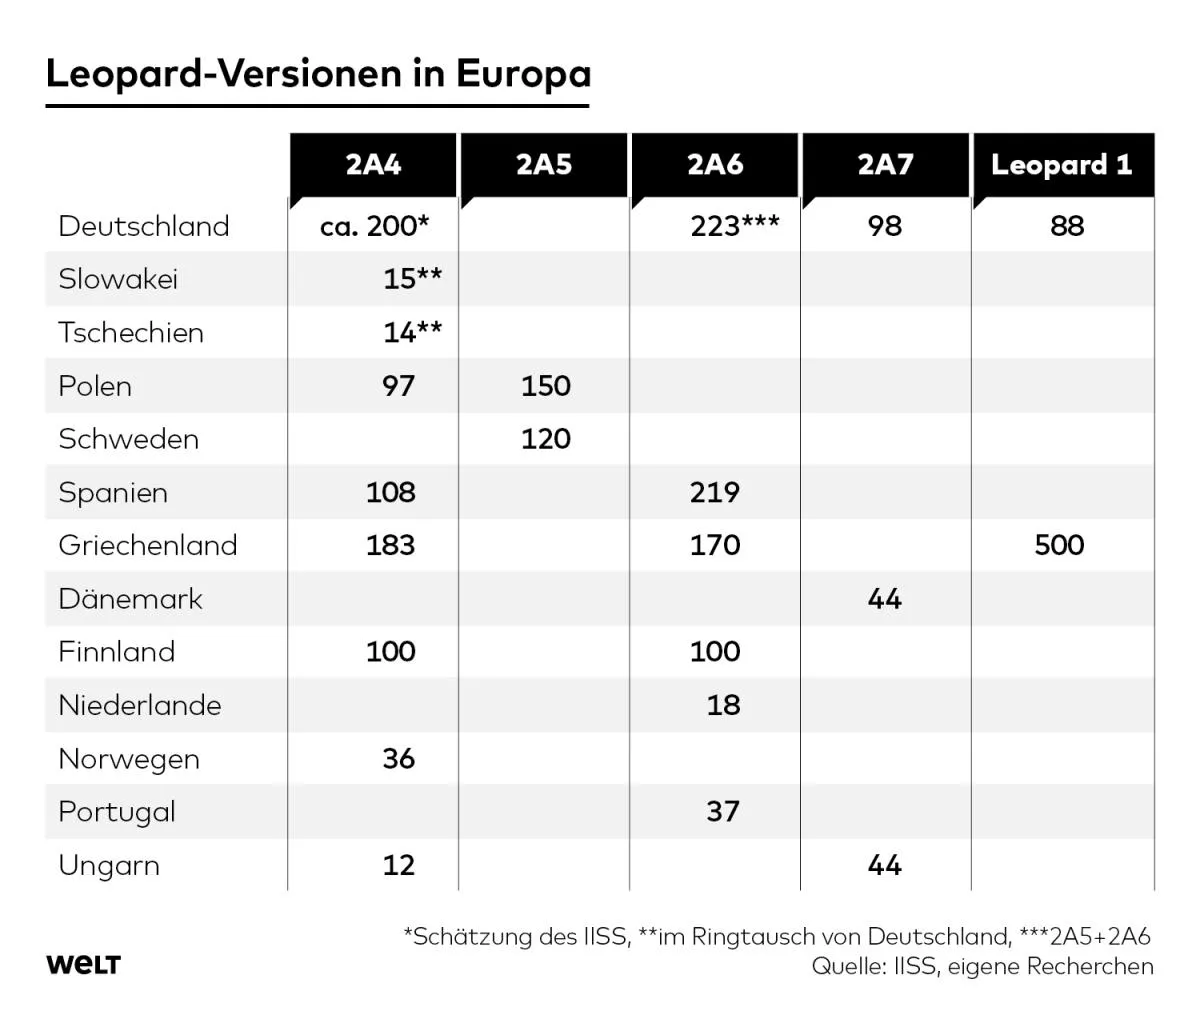 Количество танков Leopard 2 в странах Европы / Данные WELT